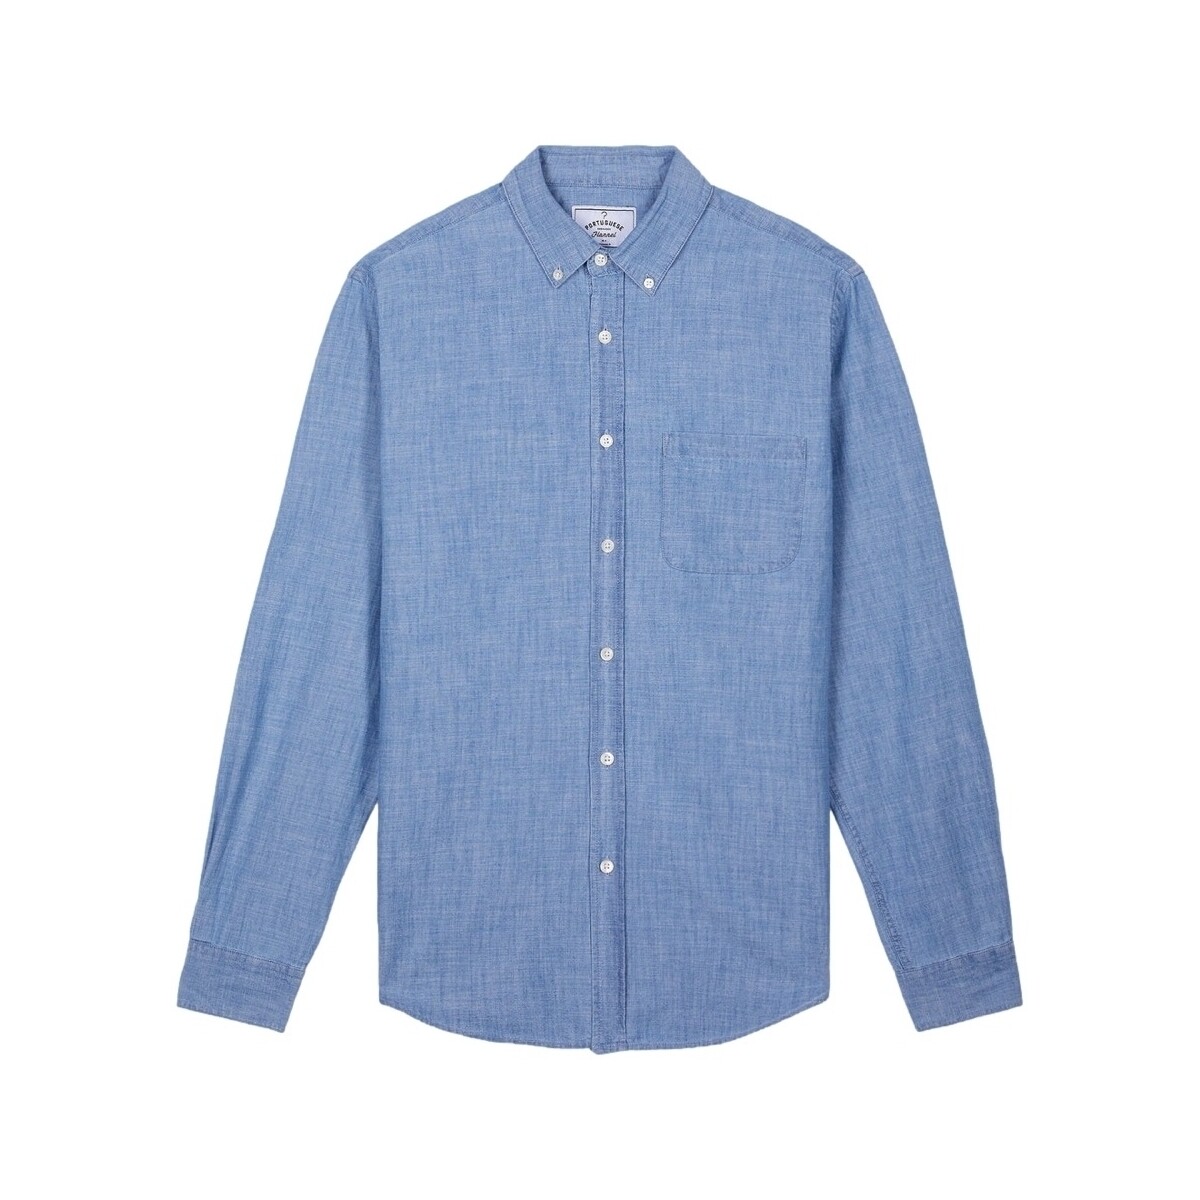 Textil Muži Košile s dlouhymi rukávy Portuguese Flannel Chambray Shirt Modrá